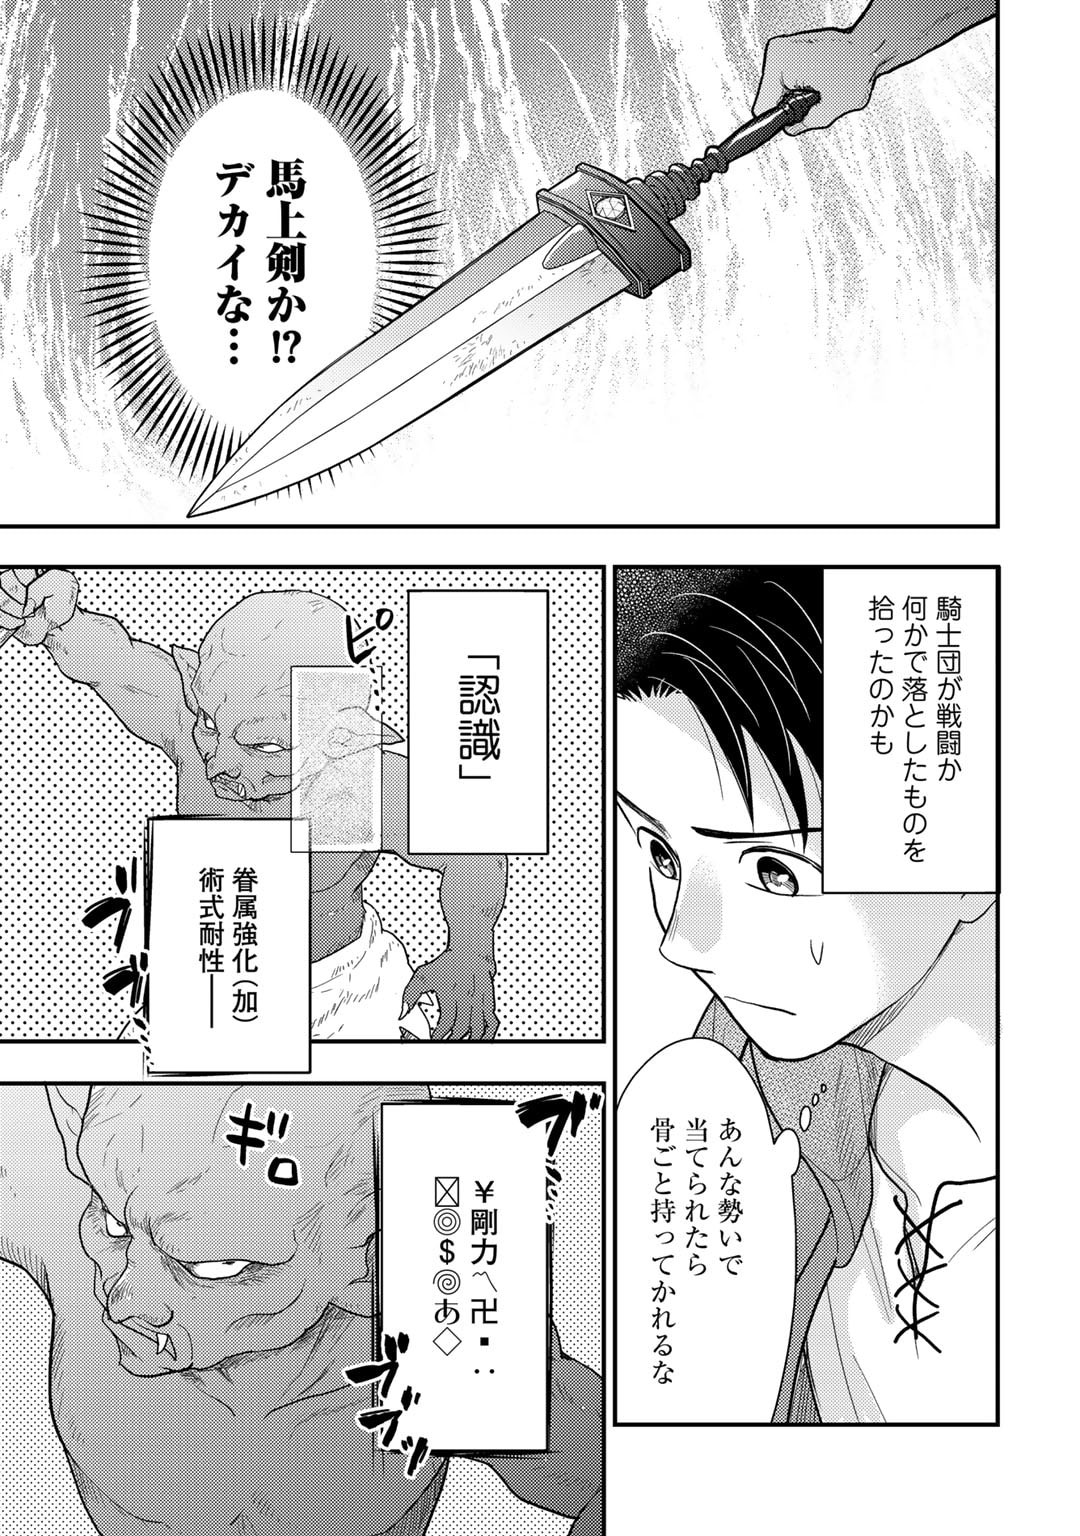 Isekai ni Kita Mitai dakedo Ikaga sureba Yoi no Darou – Shachiku SE no My Page Boukenki - Chapter 22 - Page 5